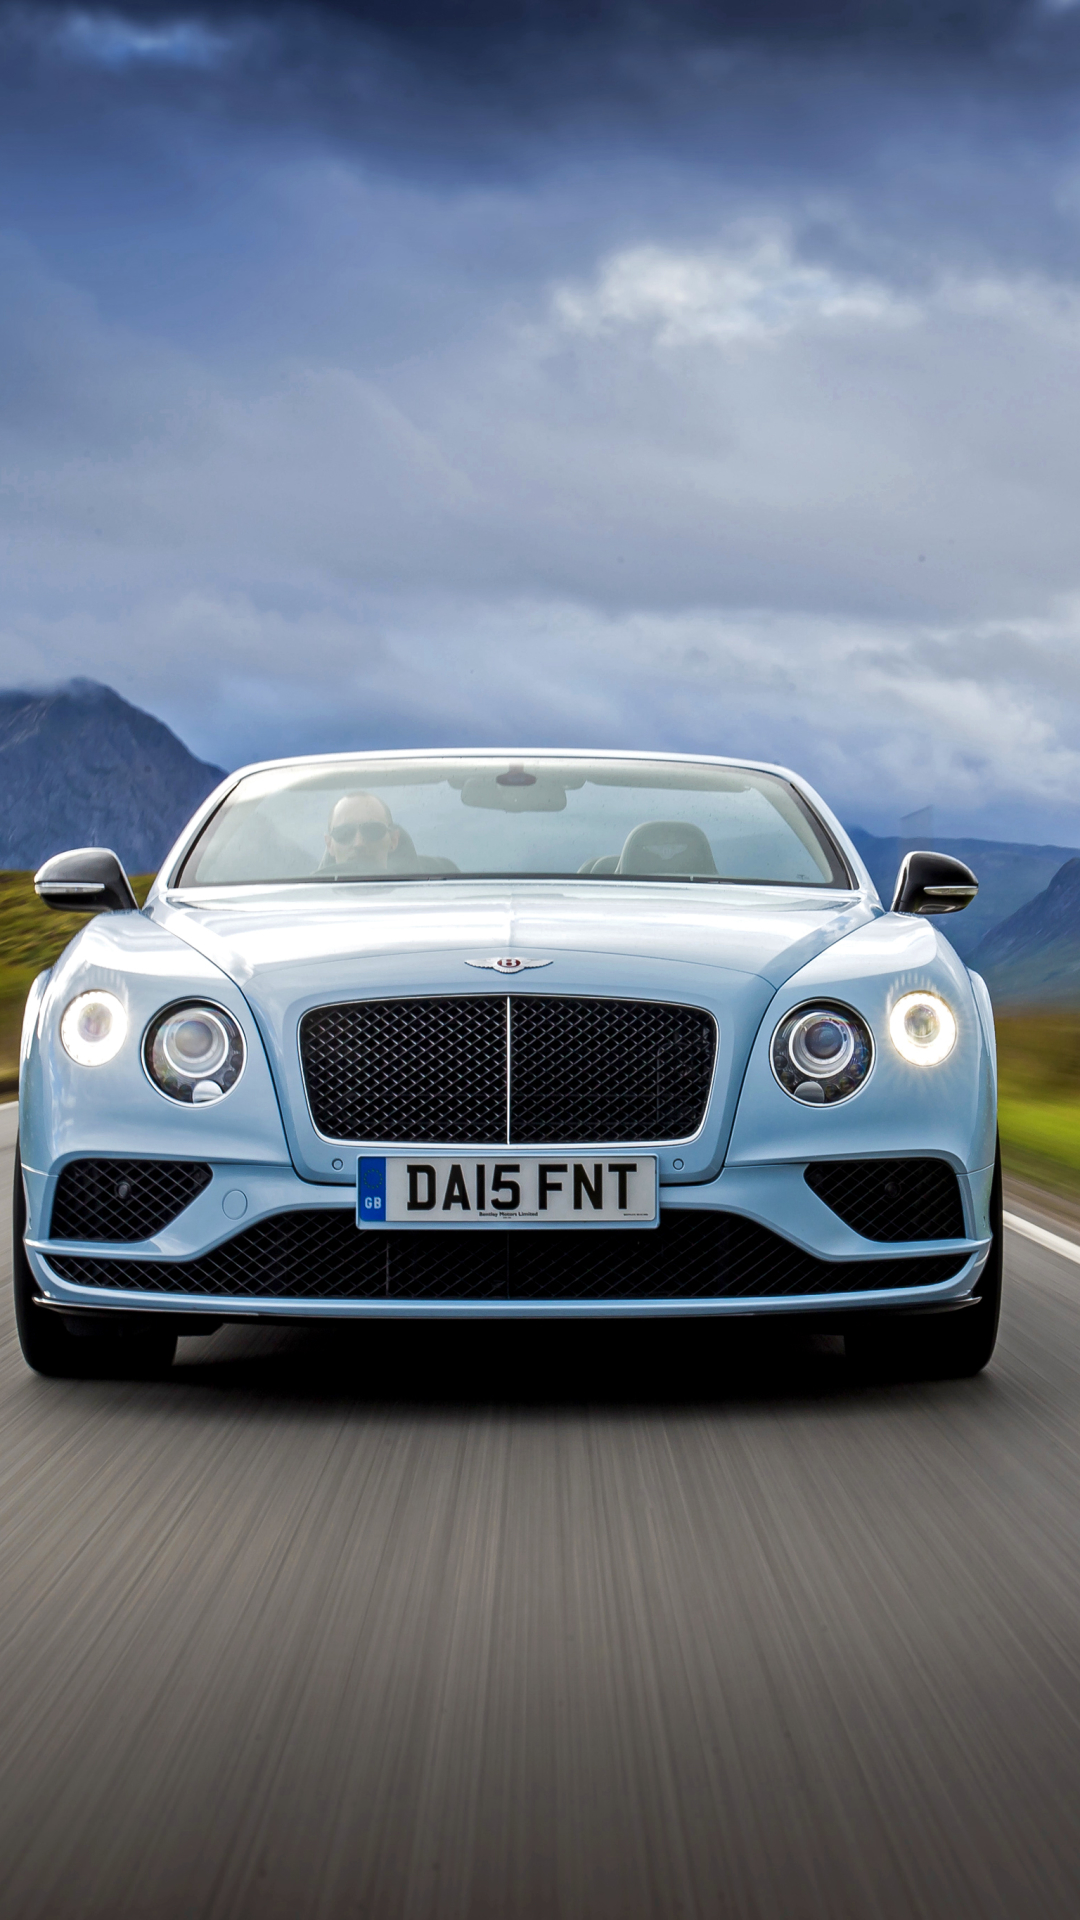 Descarga gratuita de fondo de pantalla para móvil de Bentley, Coche, Bentley Continental Gt, Gran Turismo, Vehículo, Vehículos.